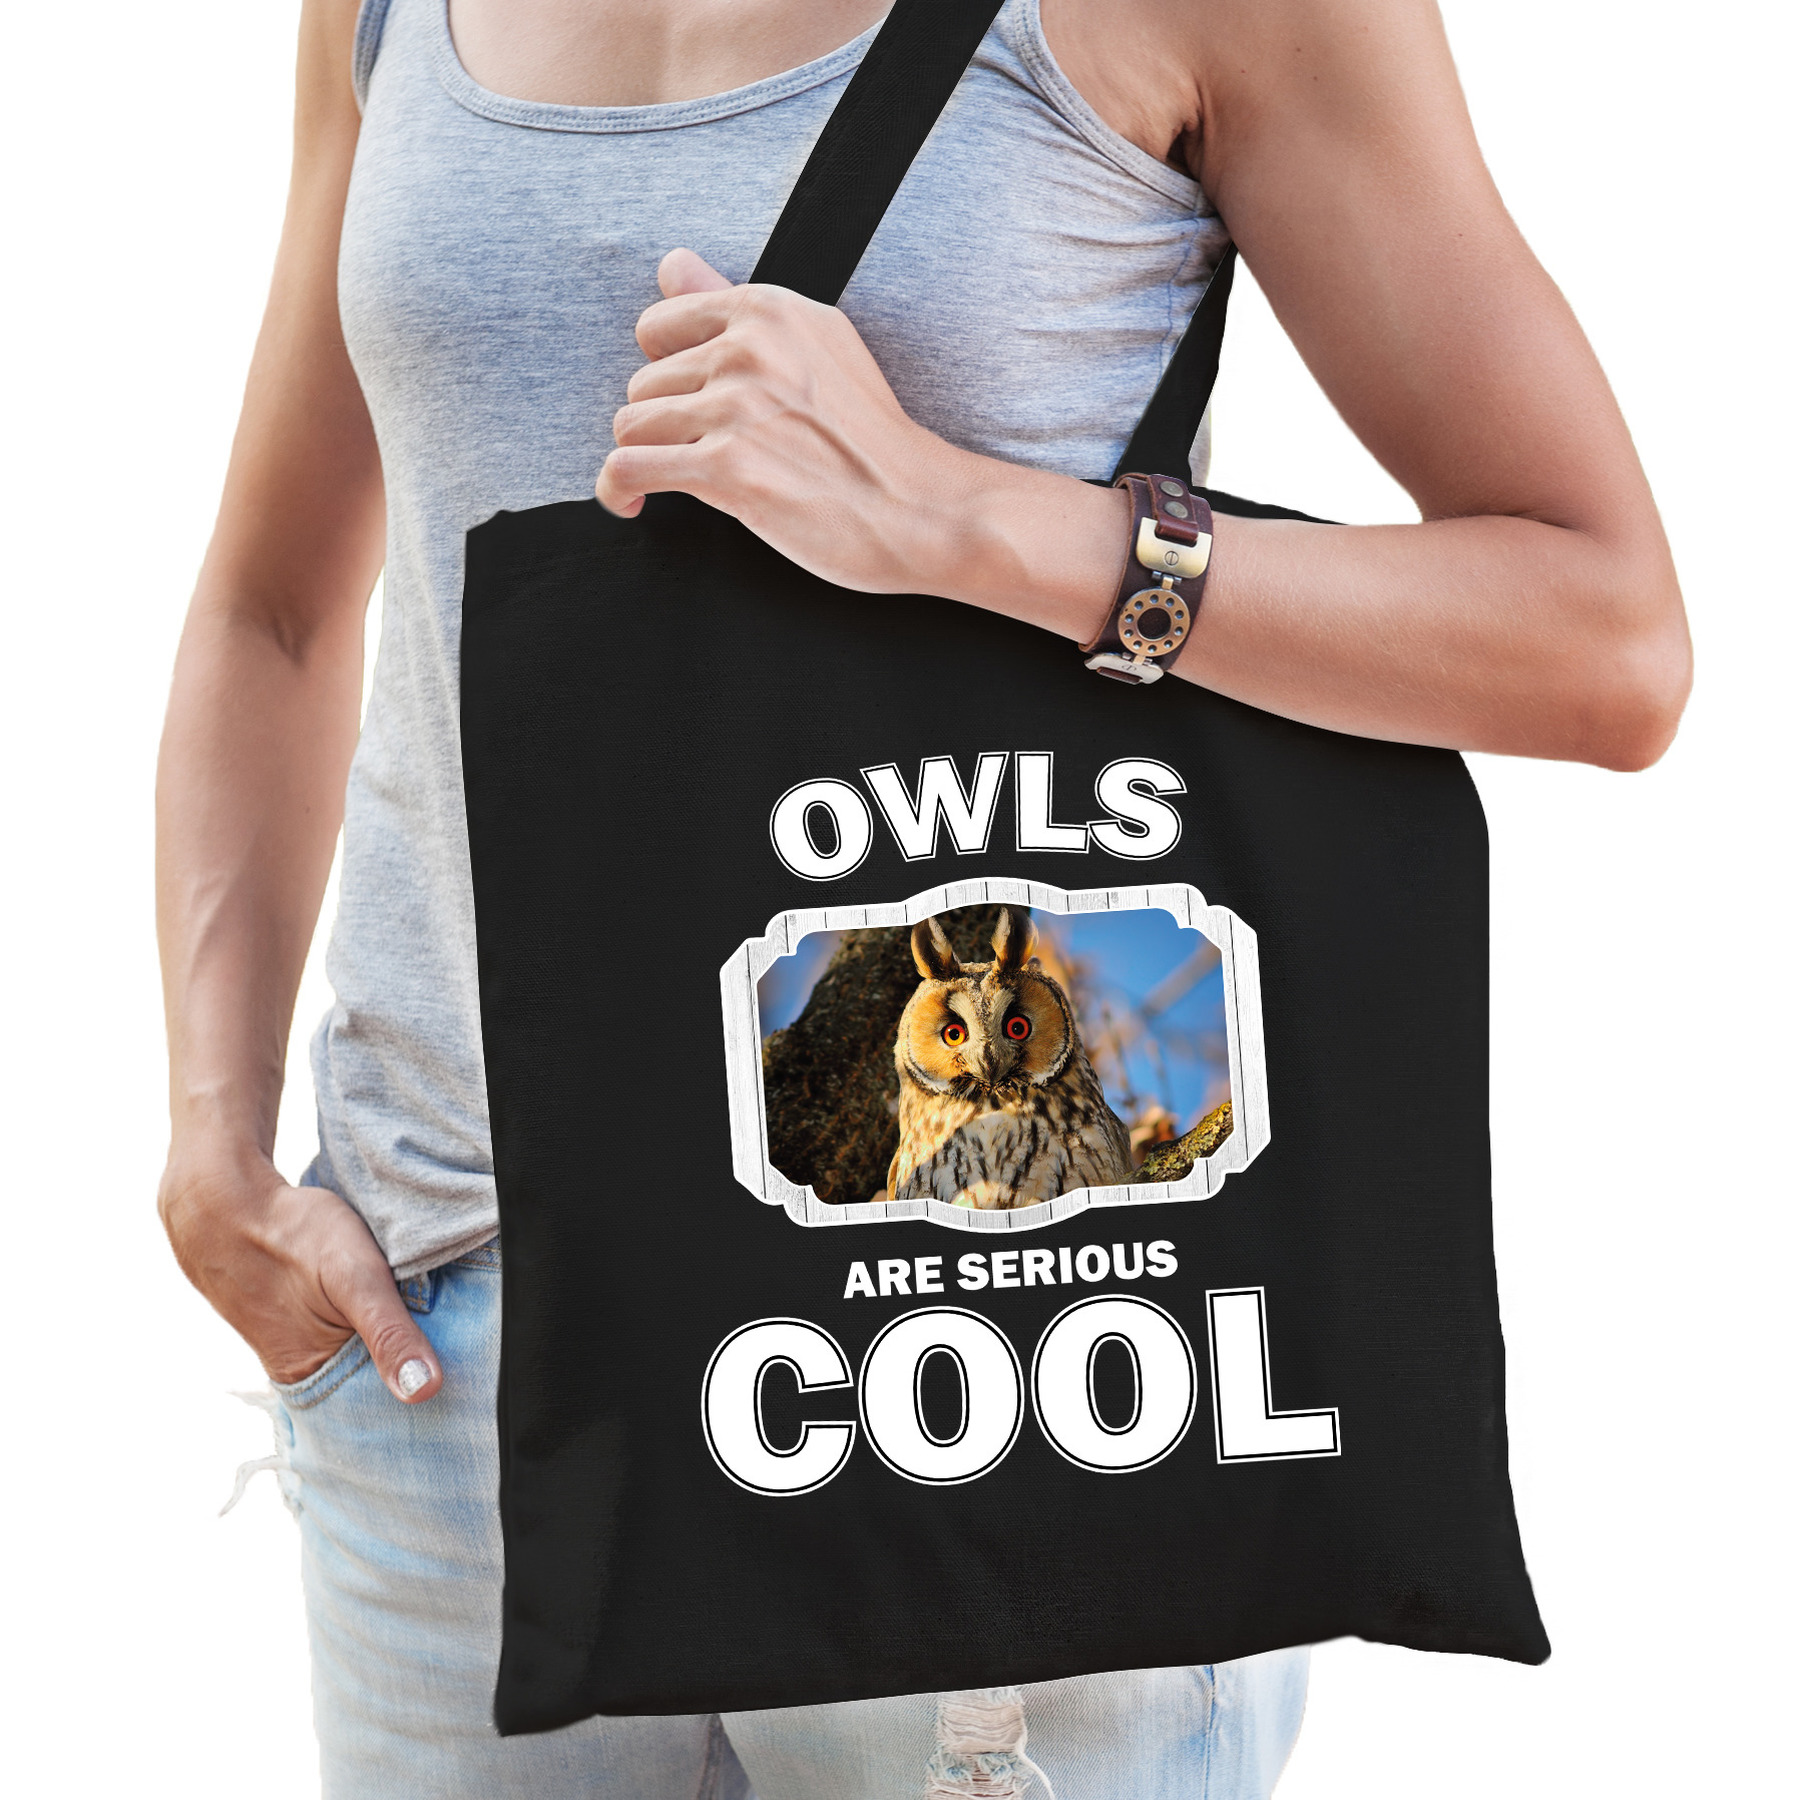 Dieren ransuil tasje zwart volwassenen en kinderen owls are cool cadeau boodschappentasje